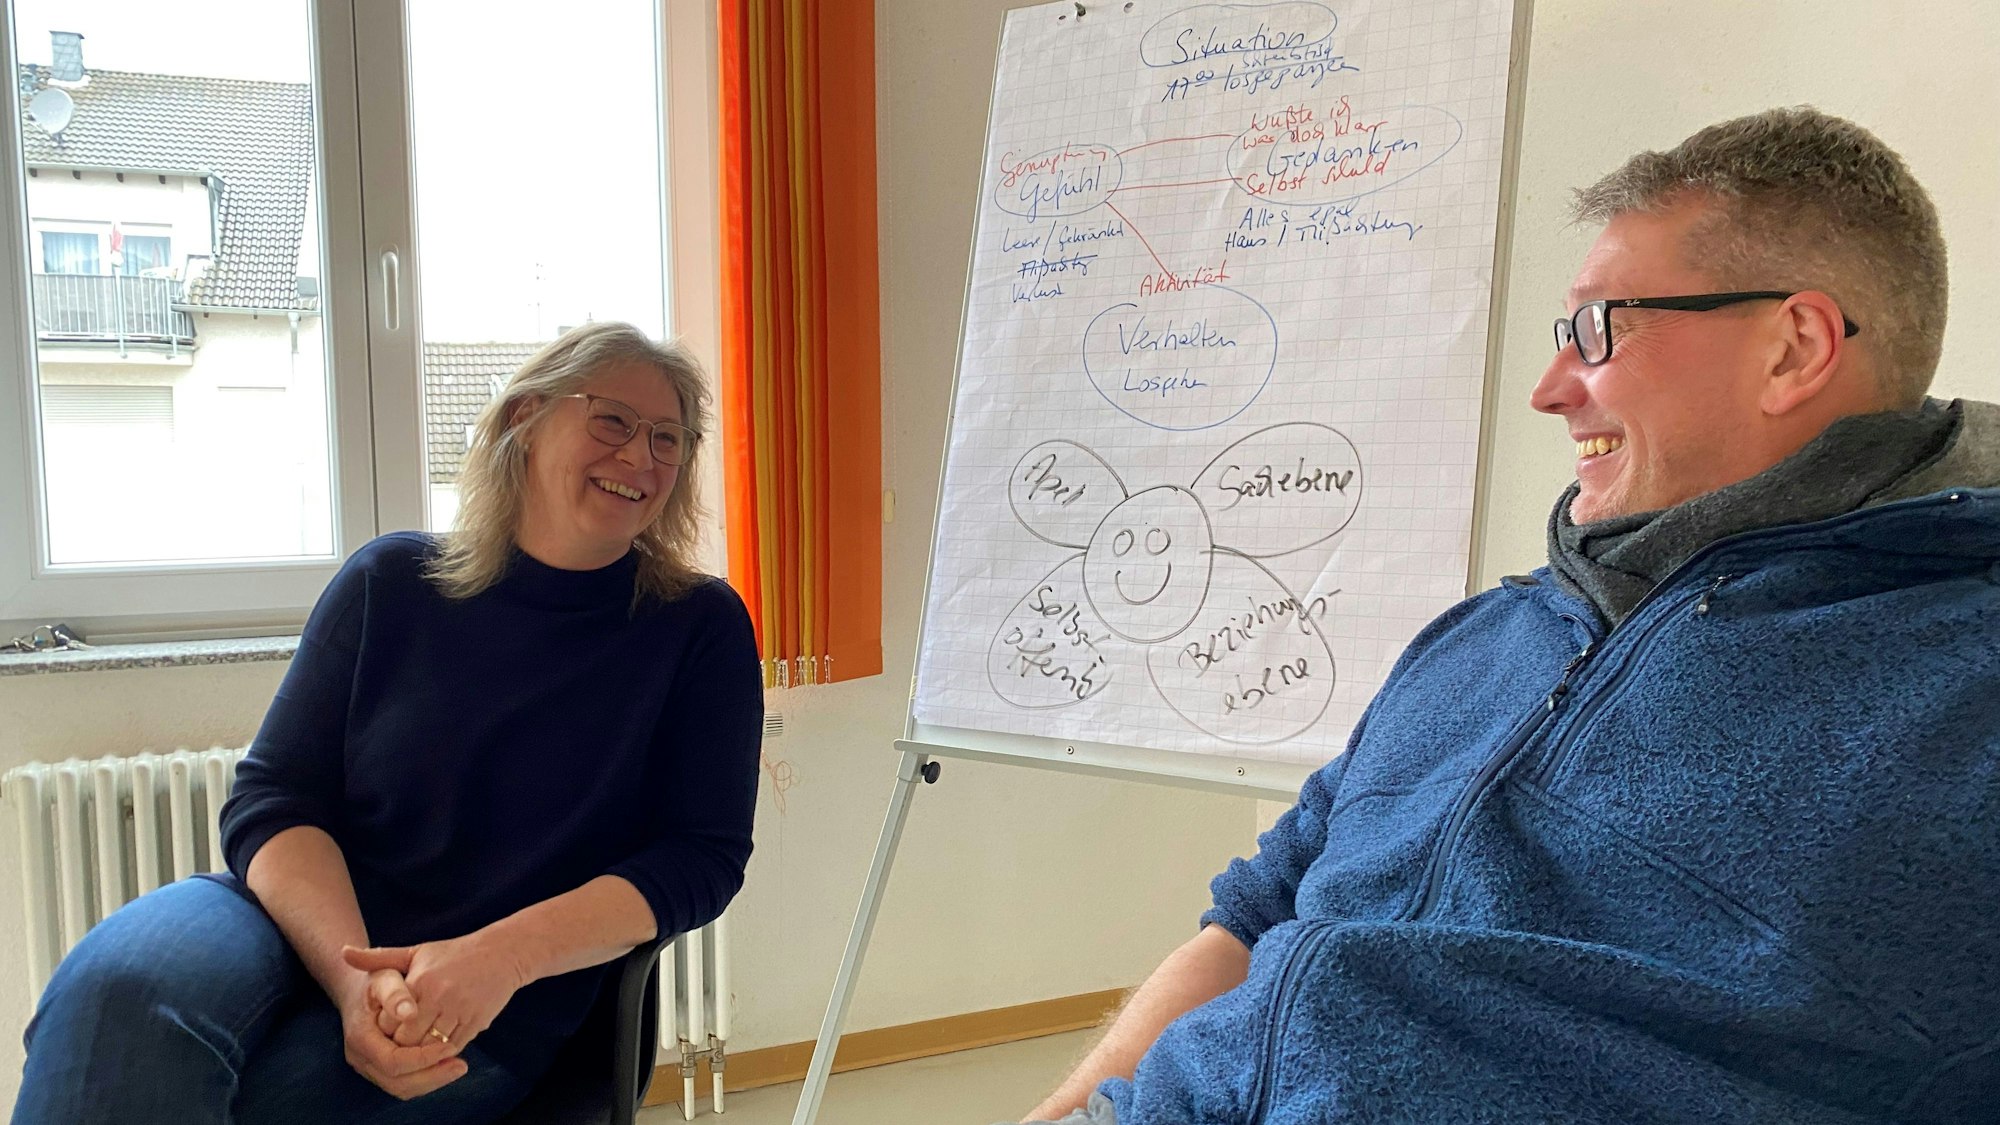 Maria Surges-Brilon und Frank Commer von der Euskirchener Caritas-Beratung sitzen neben einer Tafel, auf der Notizen im Rahmen des niederländischen Skoll-Programmes gemacht wurden.